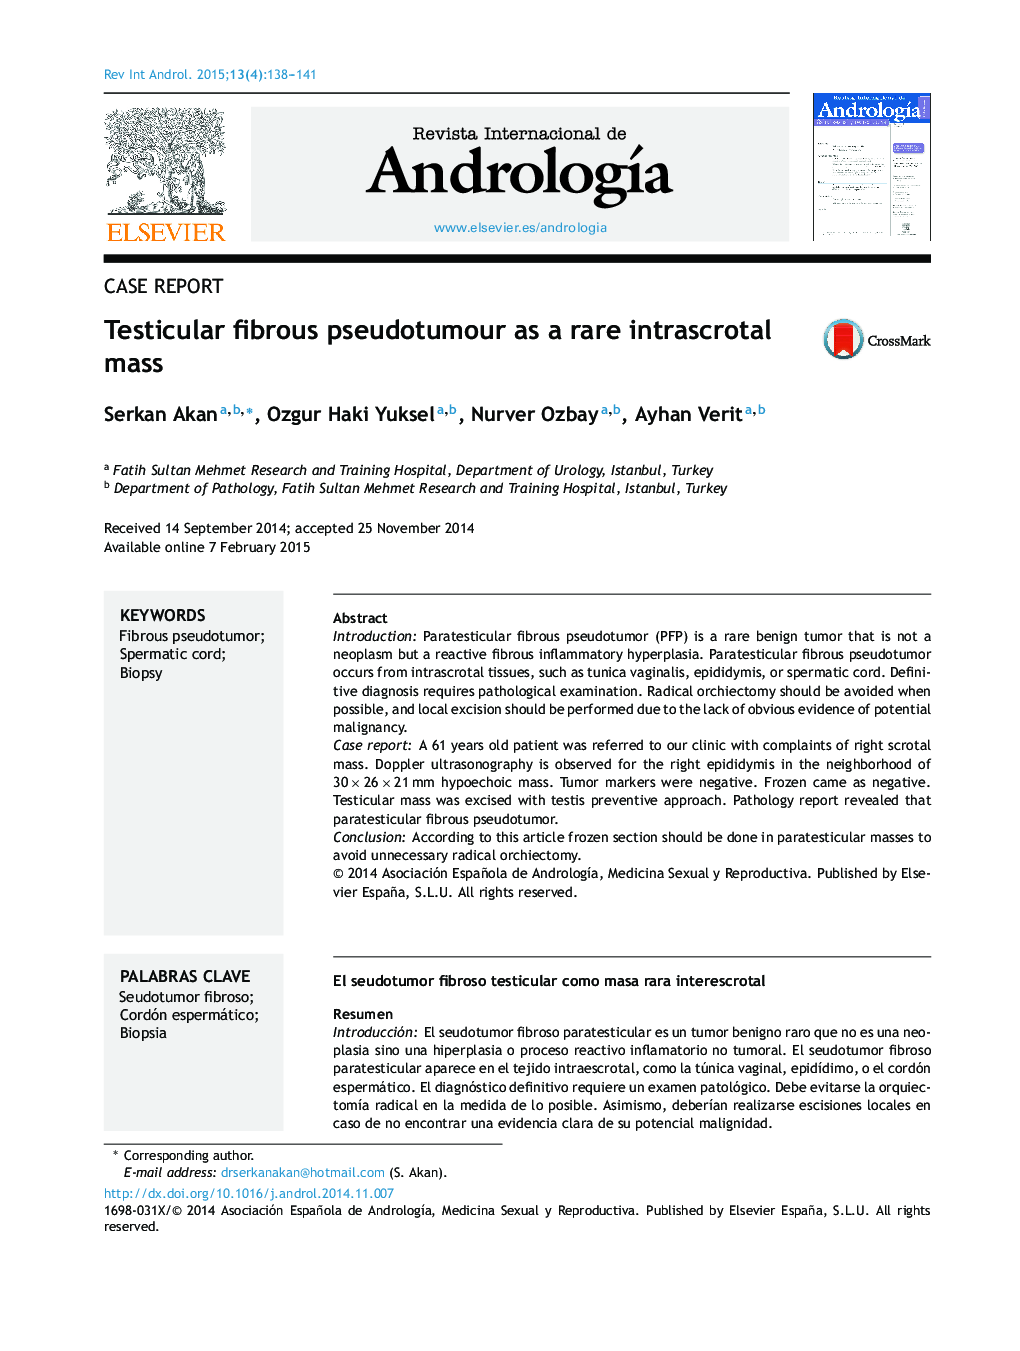 Testicular fibrous pseudotumour as a rare intrascrotal mass